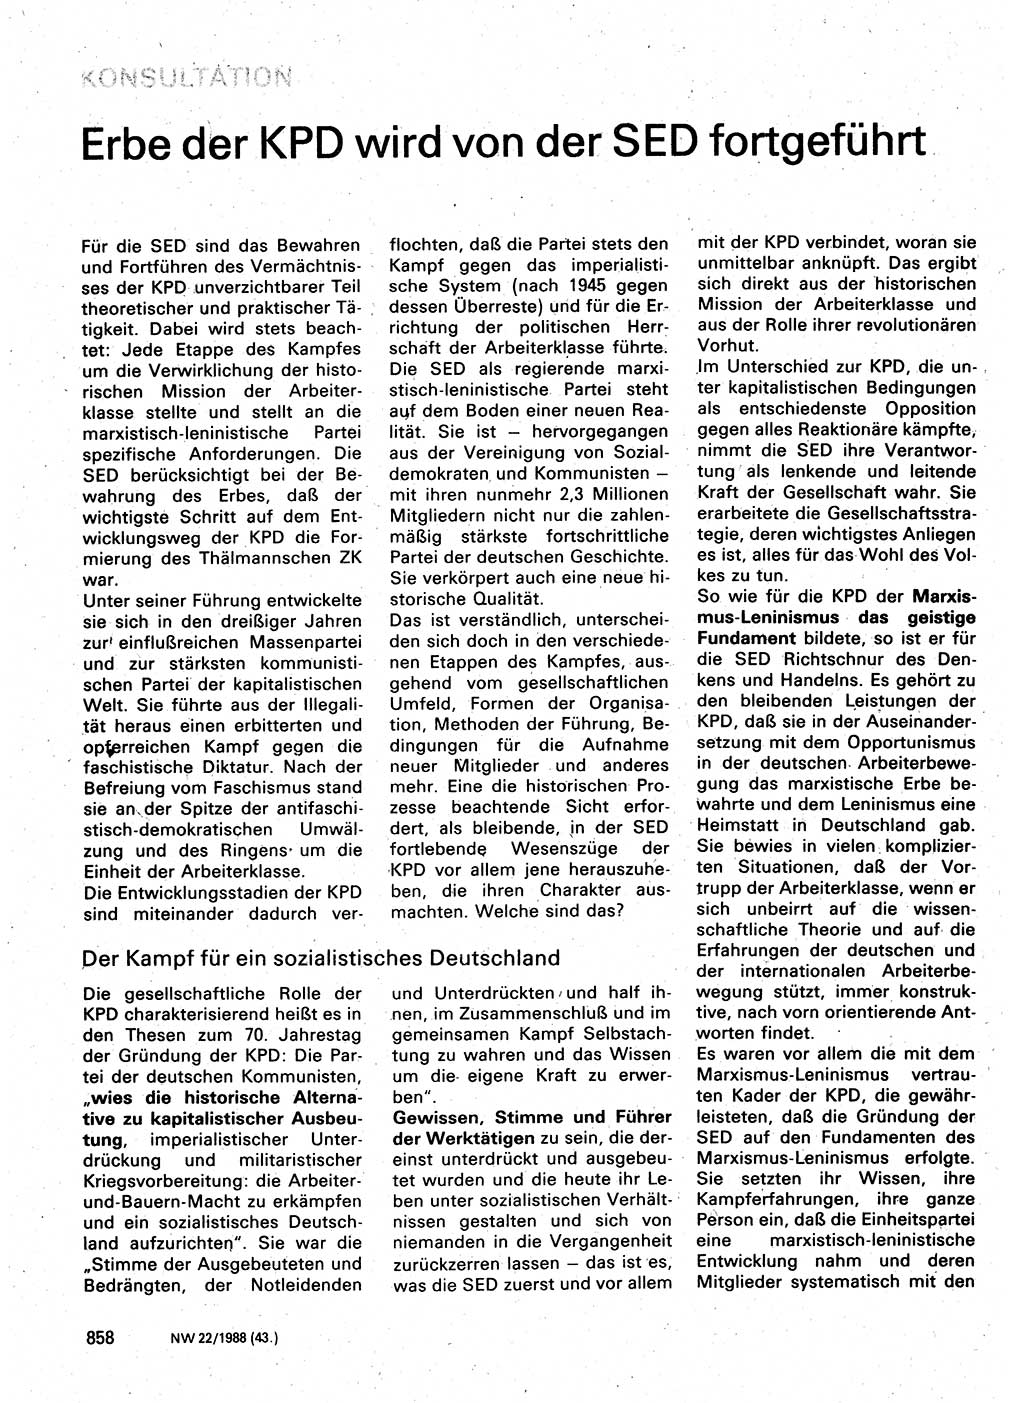 Neuer Weg (NW), Organ des Zentralkomitees (ZK) der SED (Sozialistische Einheitspartei Deutschlands) für Fragen des Parteilebens, 43. Jahrgang [Deutsche Demokratische Republik (DDR)] 1988, Seite 858 (NW ZK SED DDR 1988, S. 858)